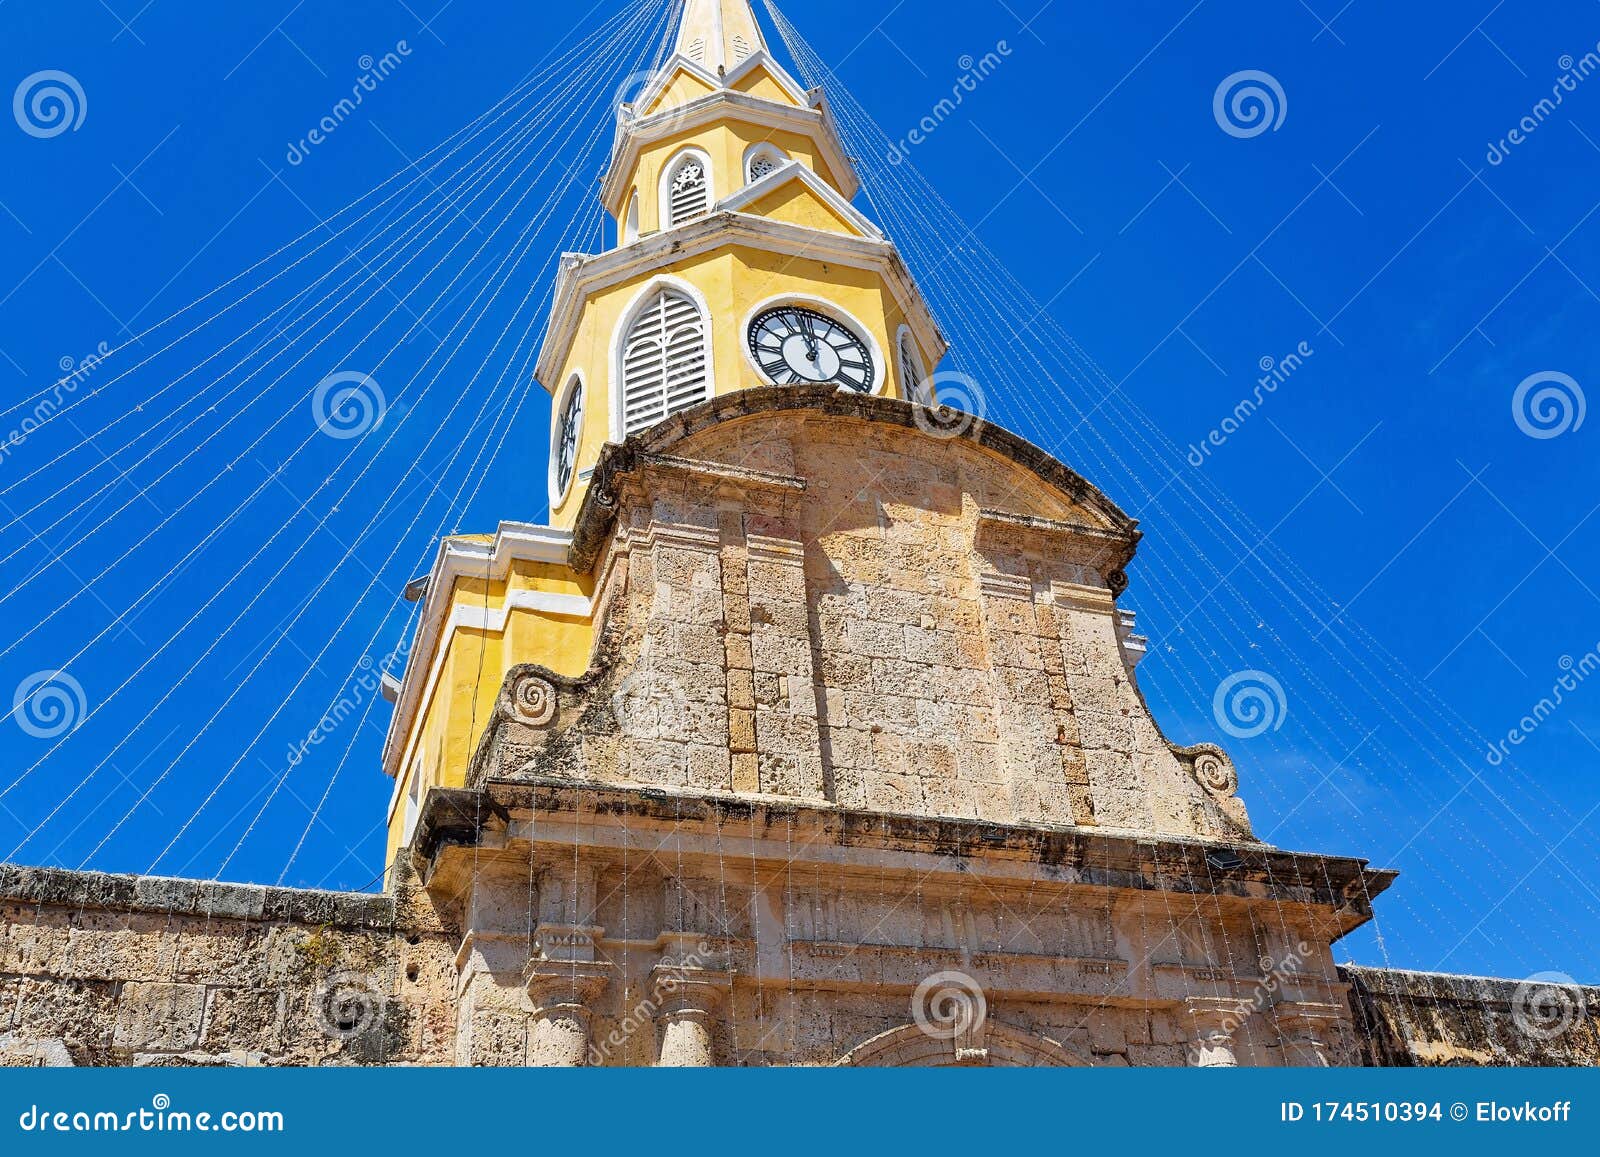 entrance to famous colonial cartagena walled city cuidad amurrallada through clock tower torre del reloj